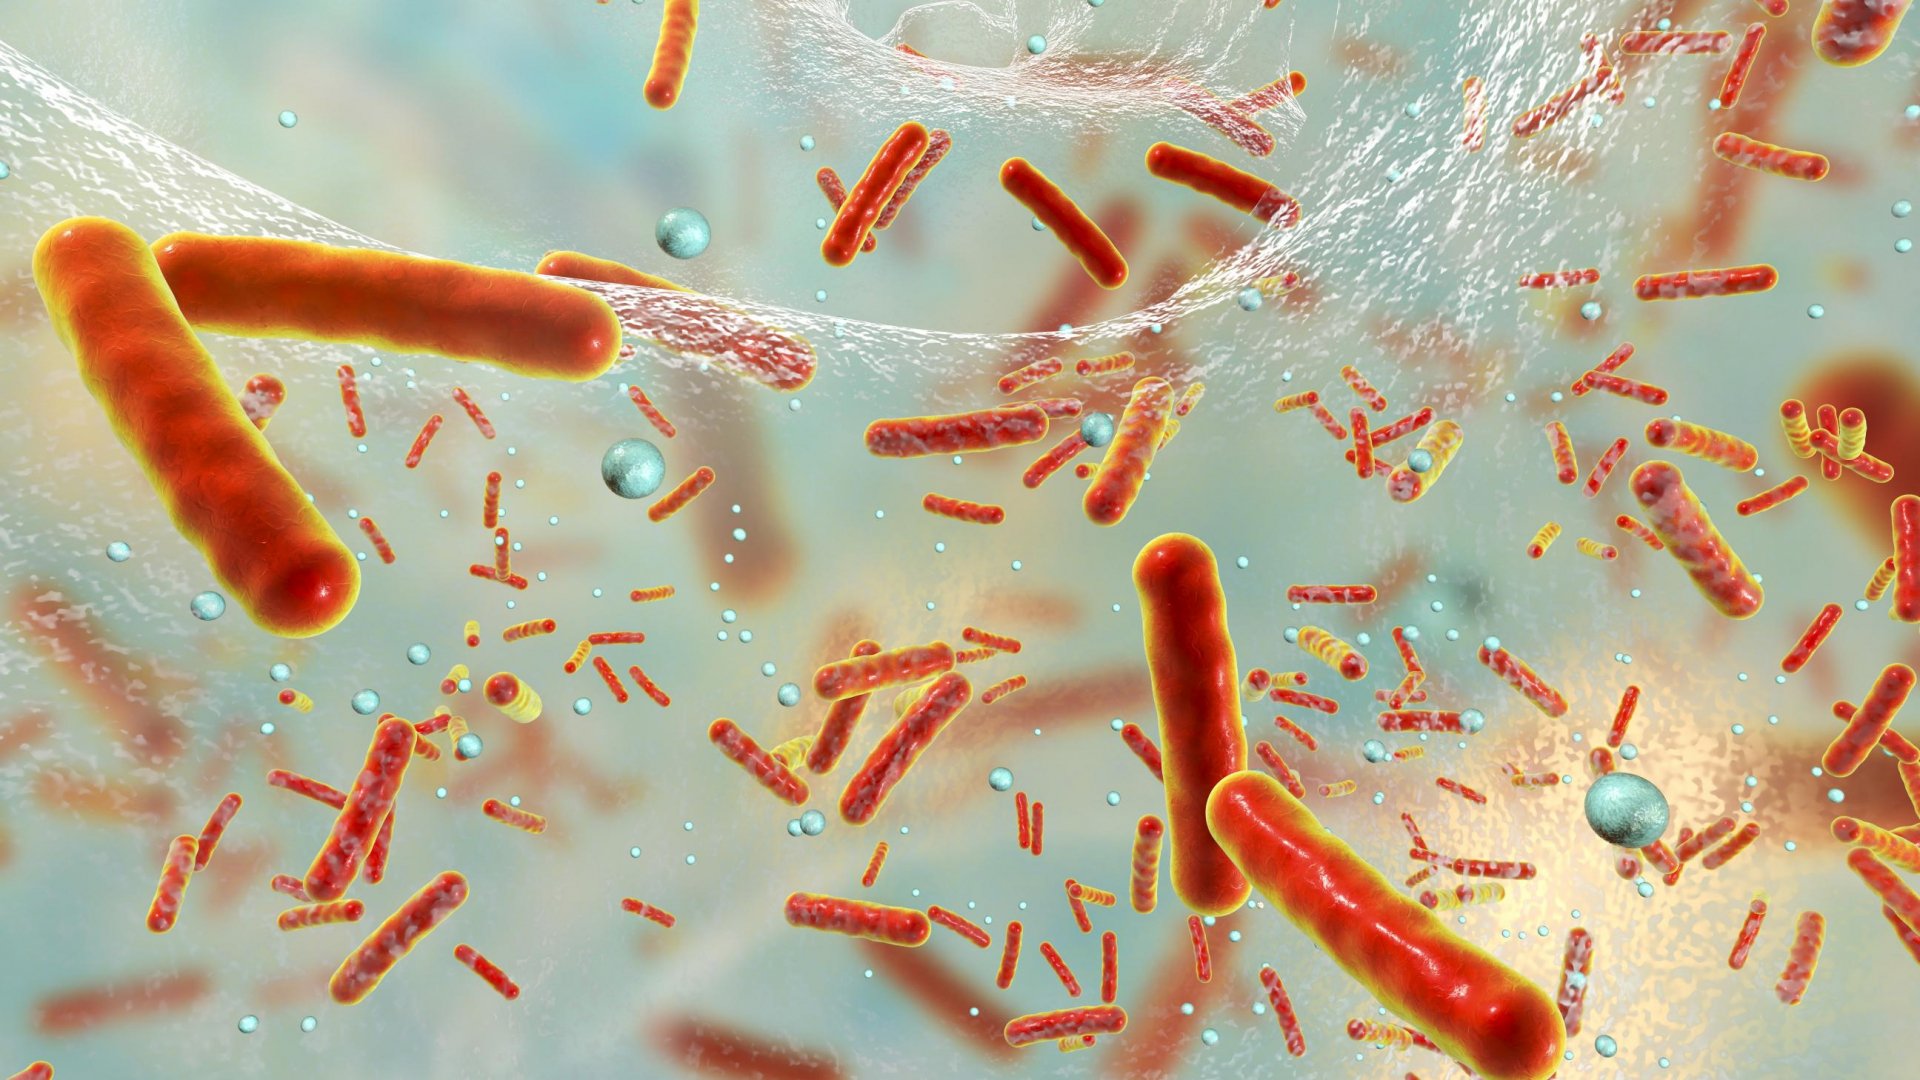 Salmonella e Campylobacter: sono state registrate forti resistenze ad alcuni antibiotici